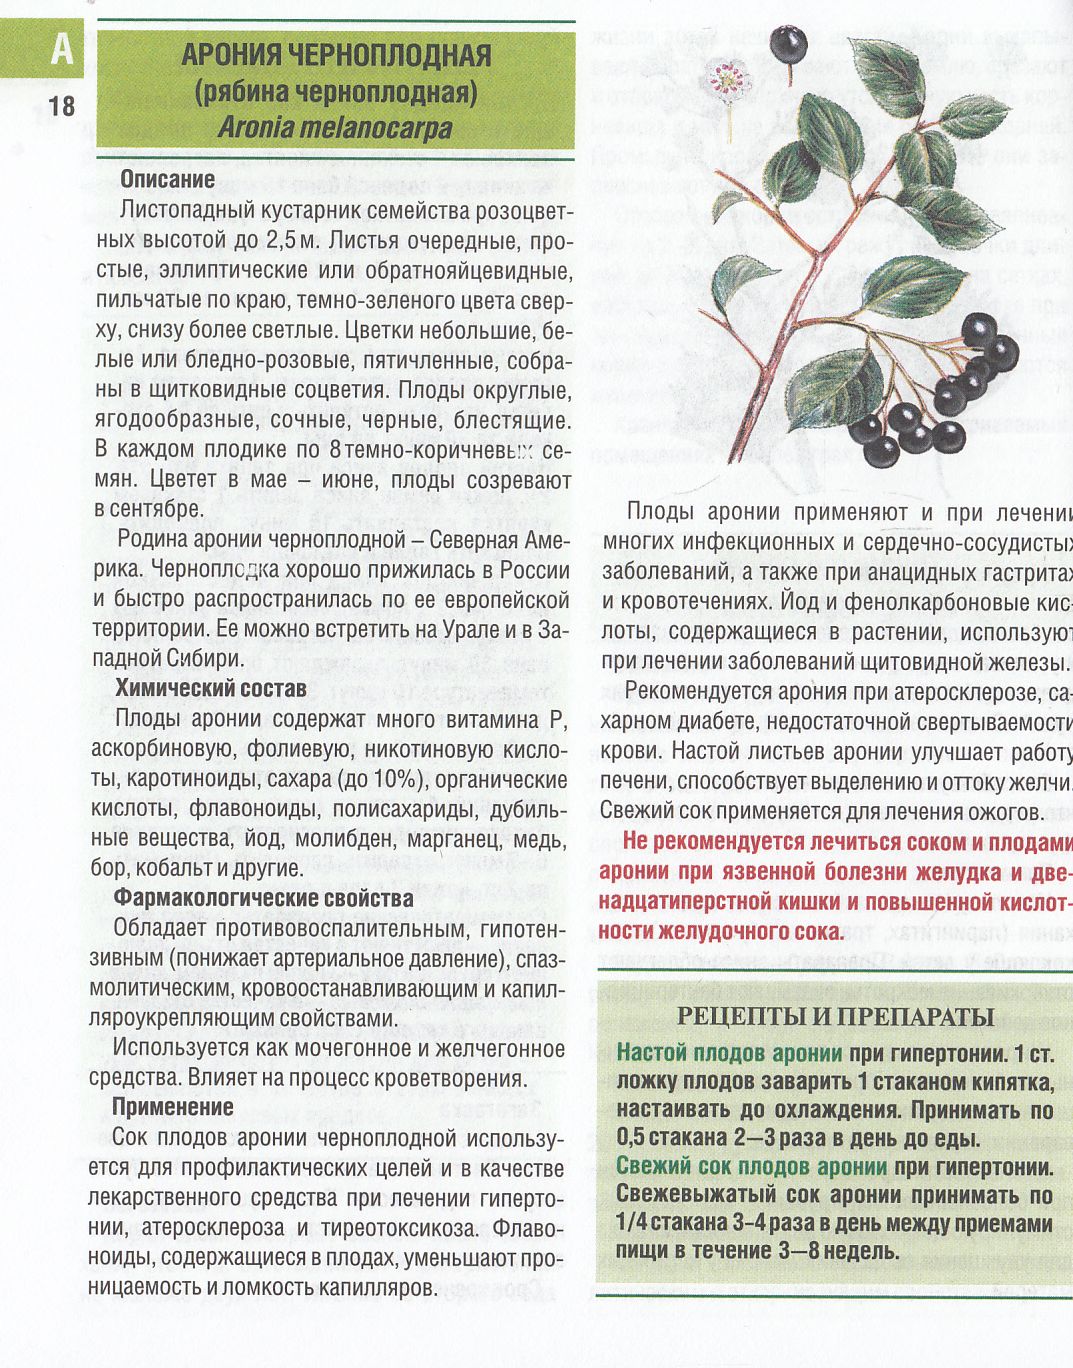 Черноплодная рябина: польза и вред для здоровья. рецепты приготовления